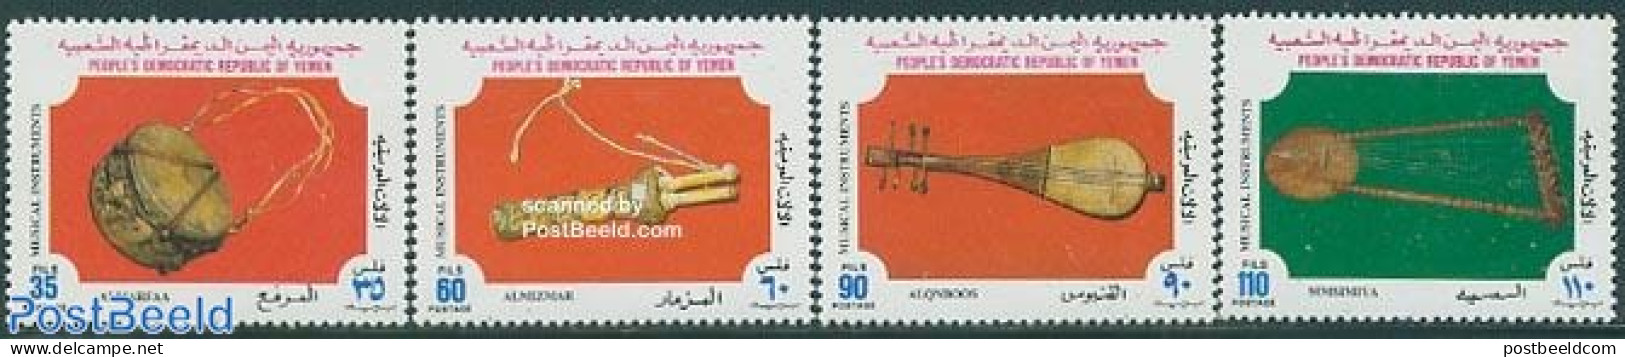 Yemen, South 1978 Music Instruments 4v, Mint NH, Performance Art - Music - Musical Instruments - Music